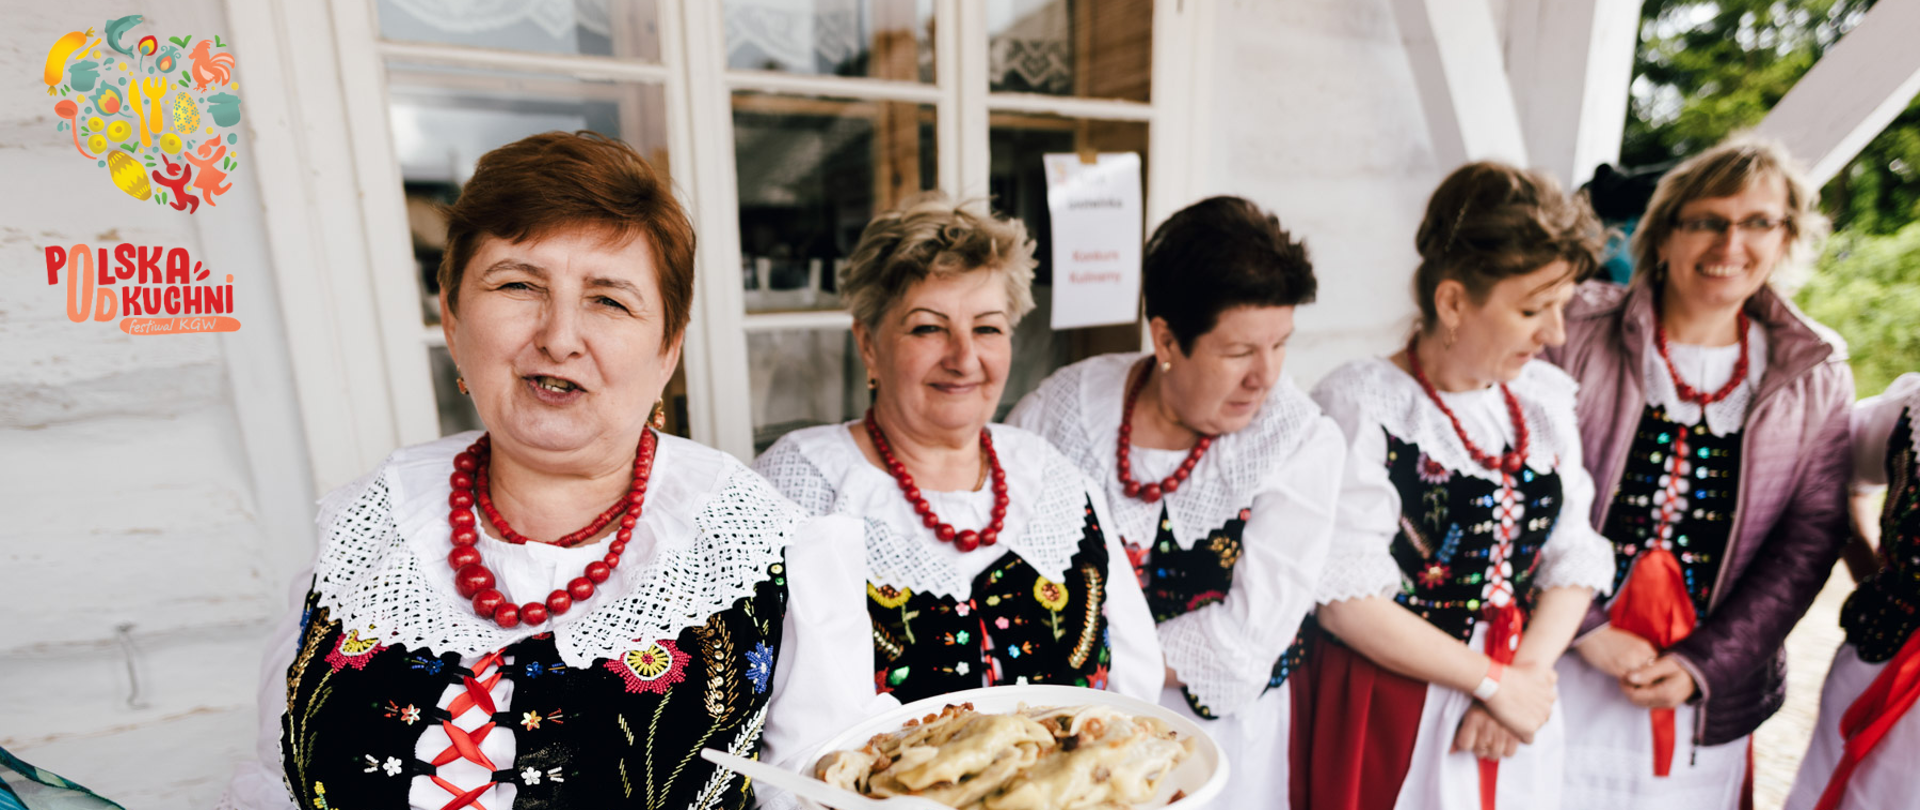 Festiwal „Polska Od Kuchni”. Kobiety w strojach ludowych prezentują wykonane potrawy regionalne